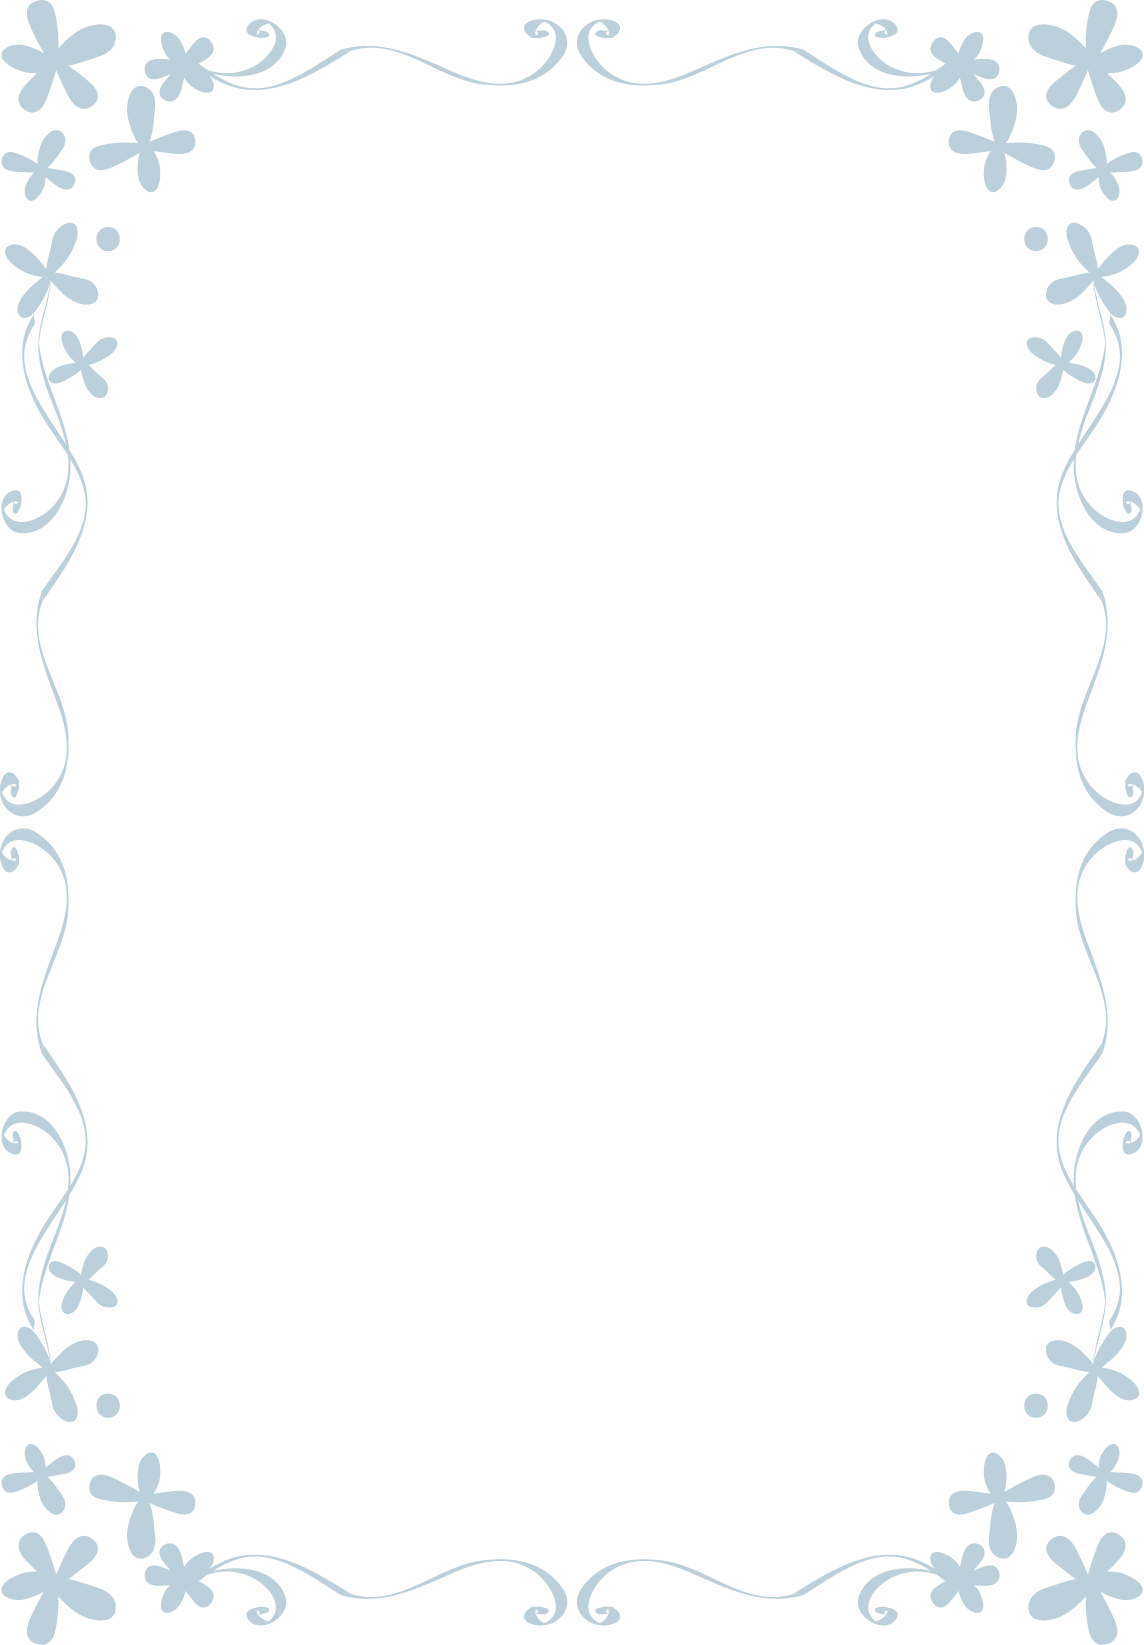 枠 飾り枠 飾り罫 飾り線 おしゃれな小花のデザイン 無料イラスト素材